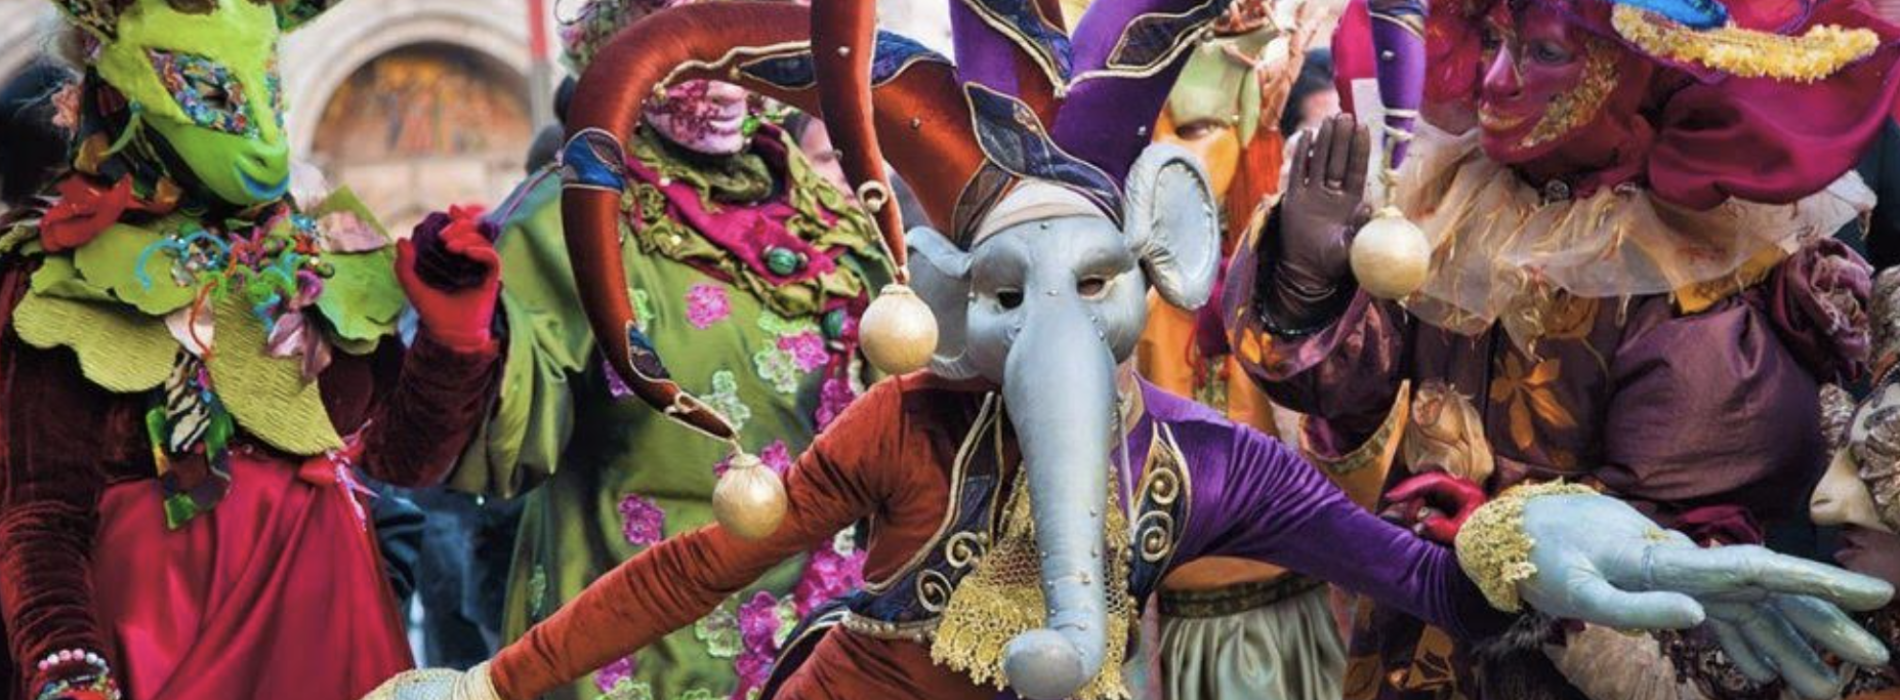 Carnevale a Capua, gran ballo in maschera e carri allegorici